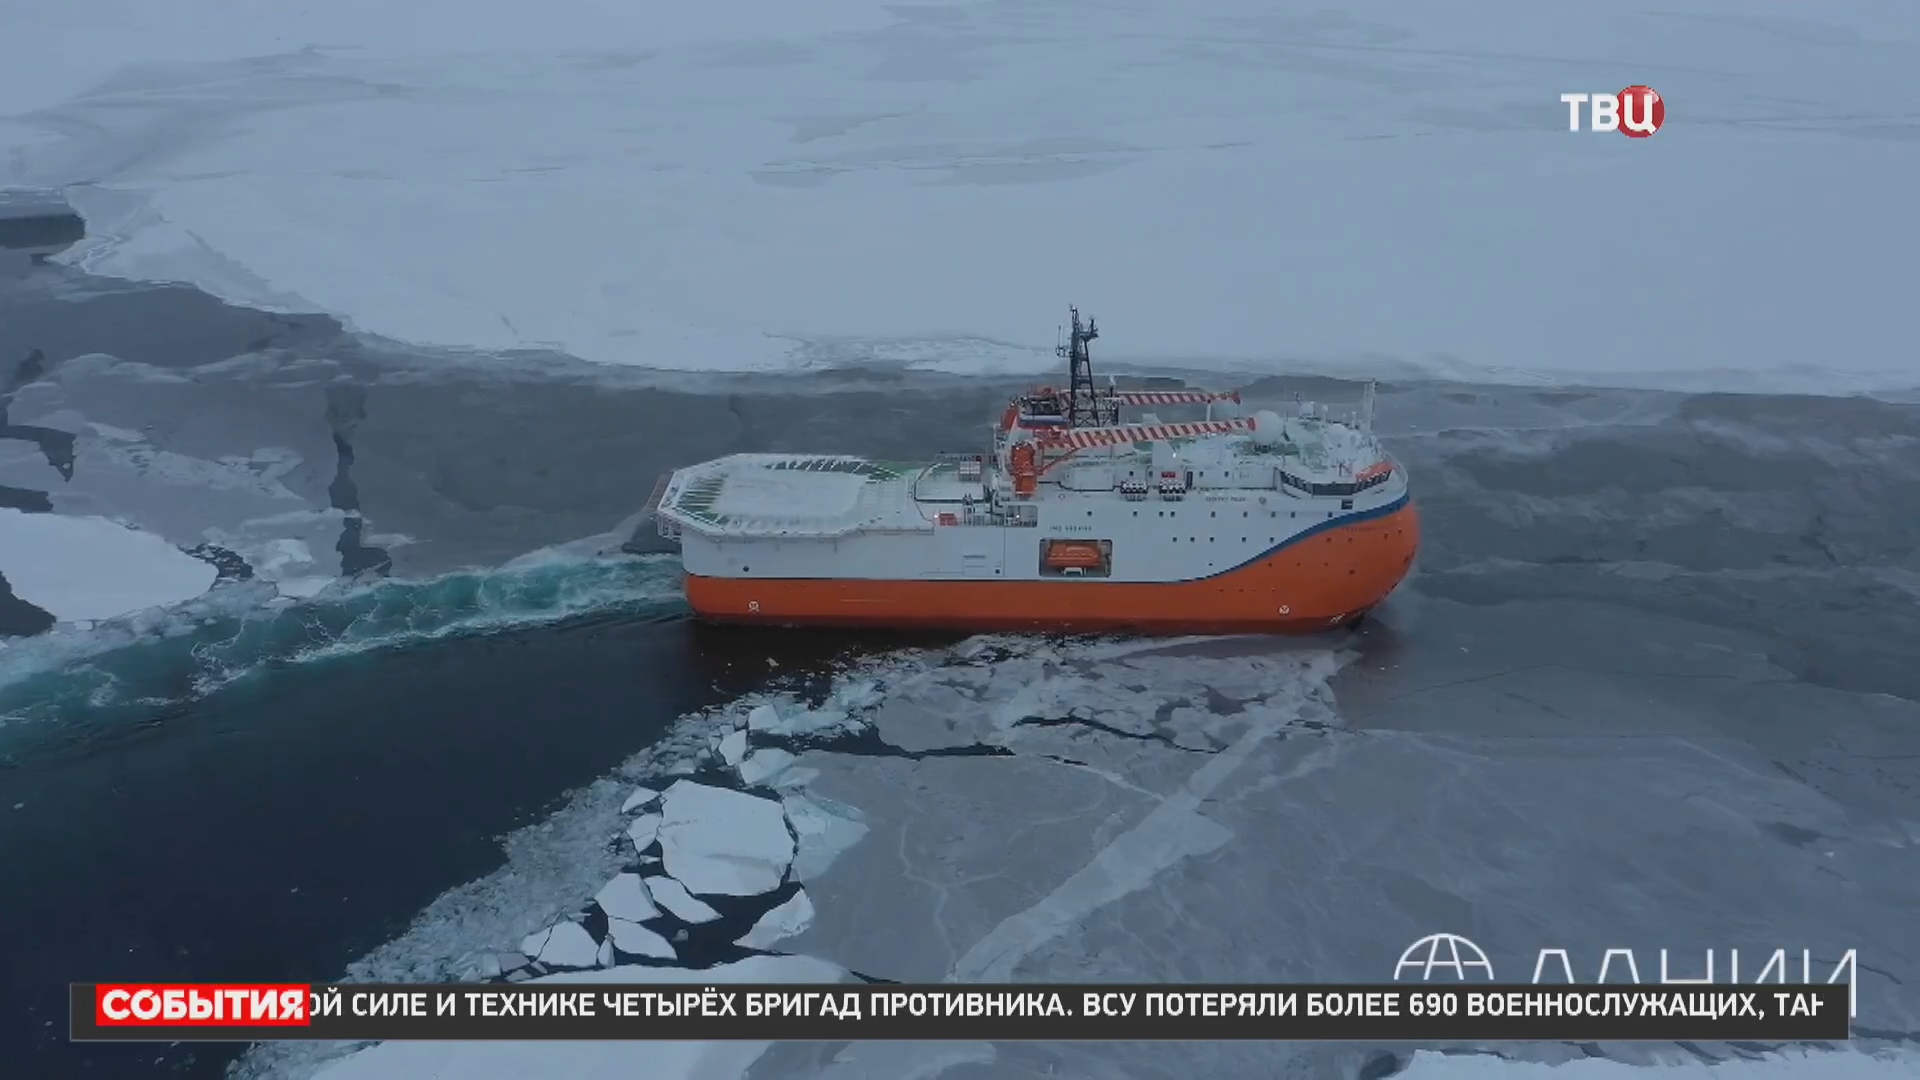 Первая в мире ледостойкая платформа "Северный полюс" вернулась в Мурманск / События на ТВЦ